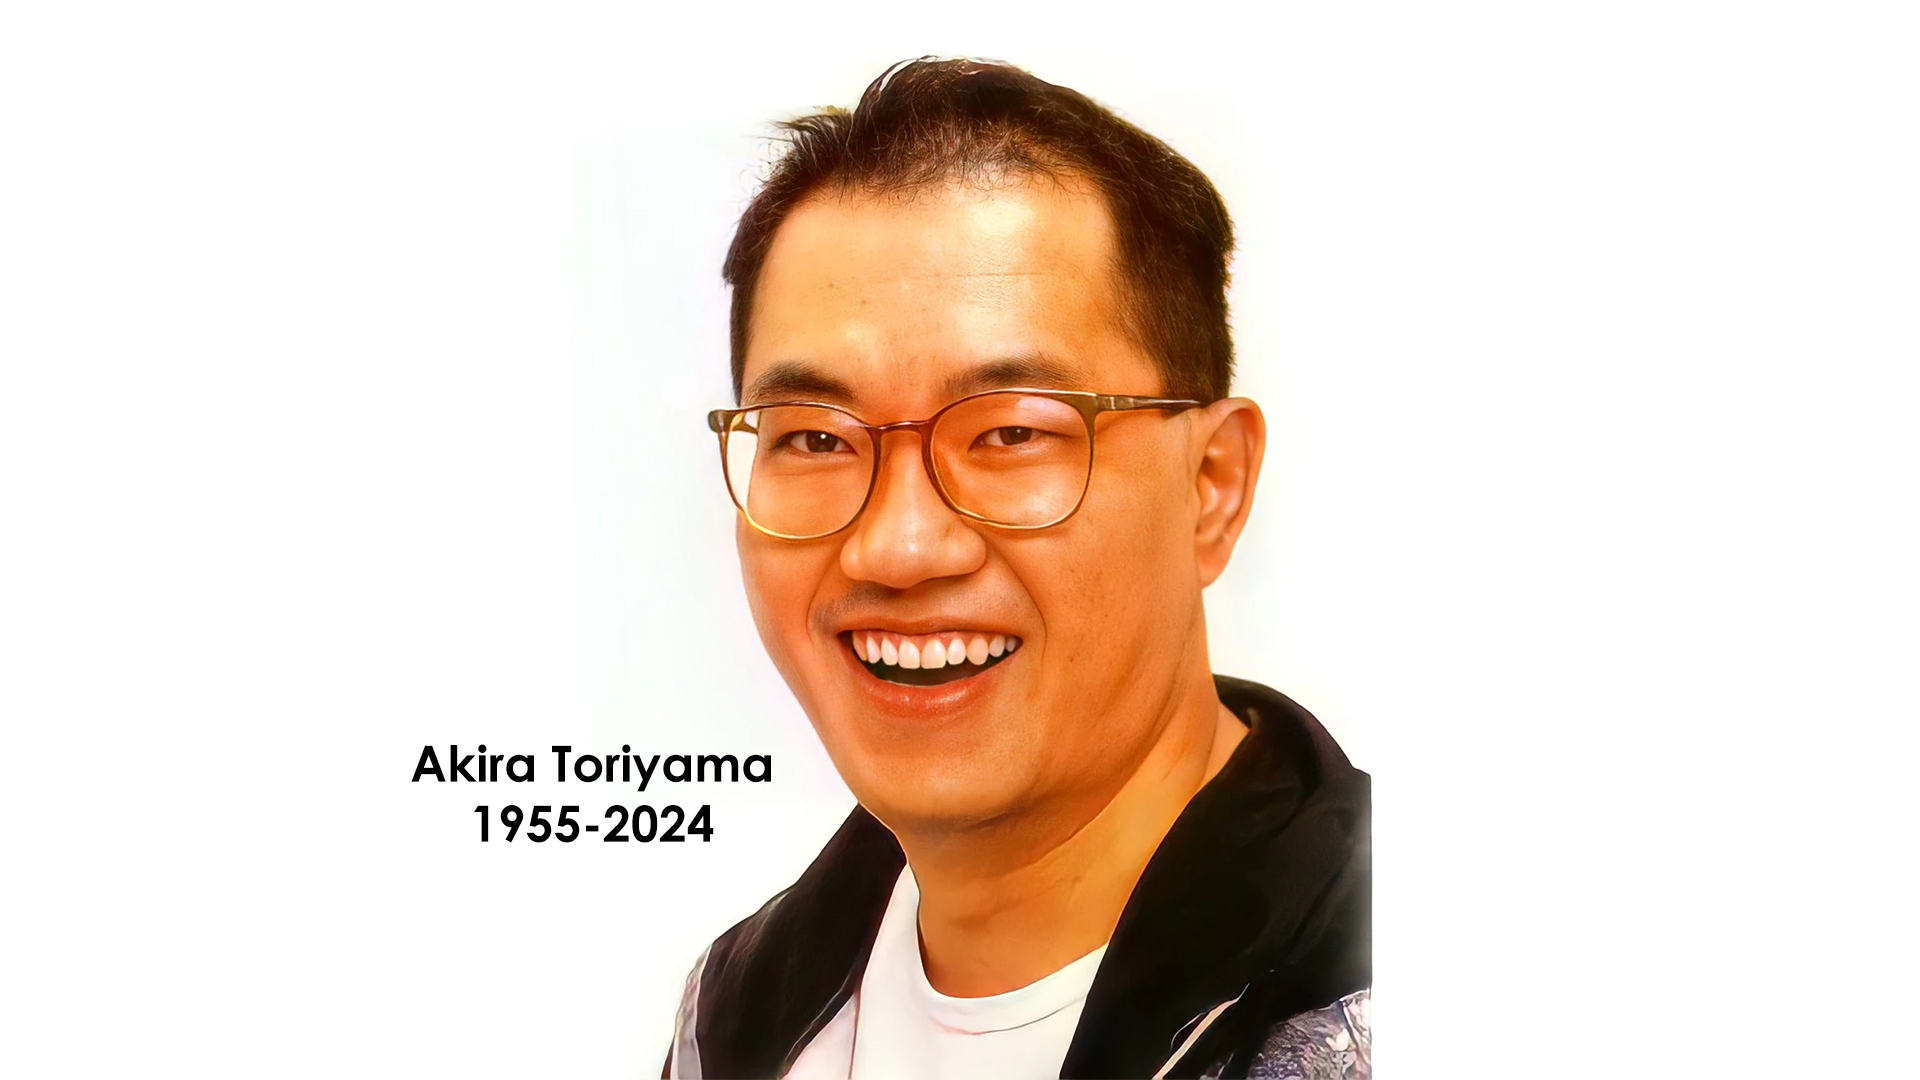 Legendary creator and artist Akira Toriyama has passed